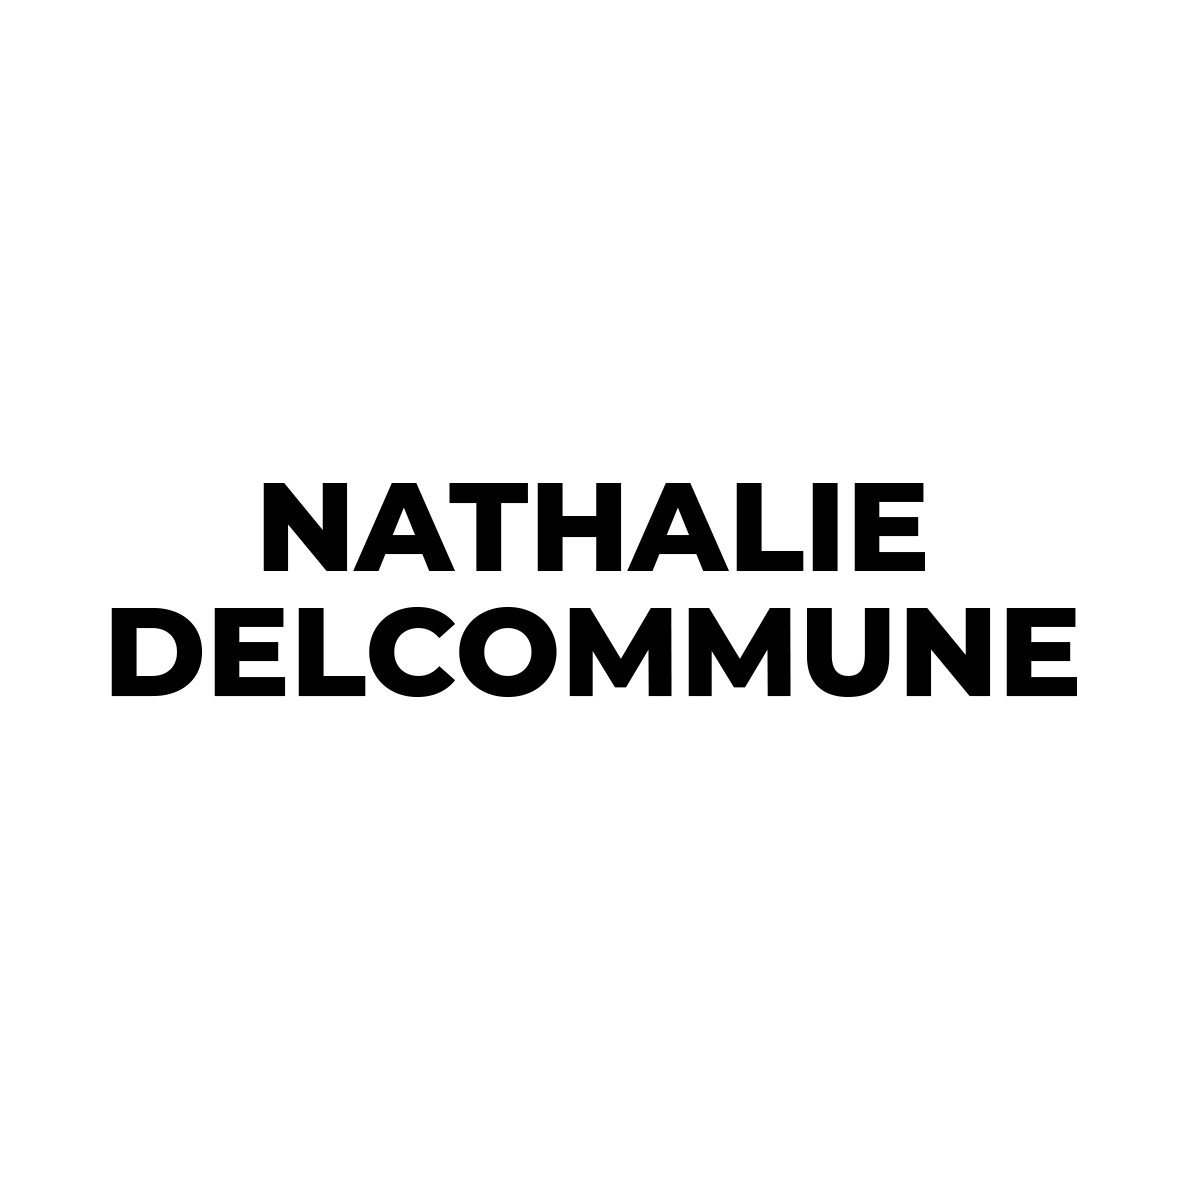 Nathalie Delcommune